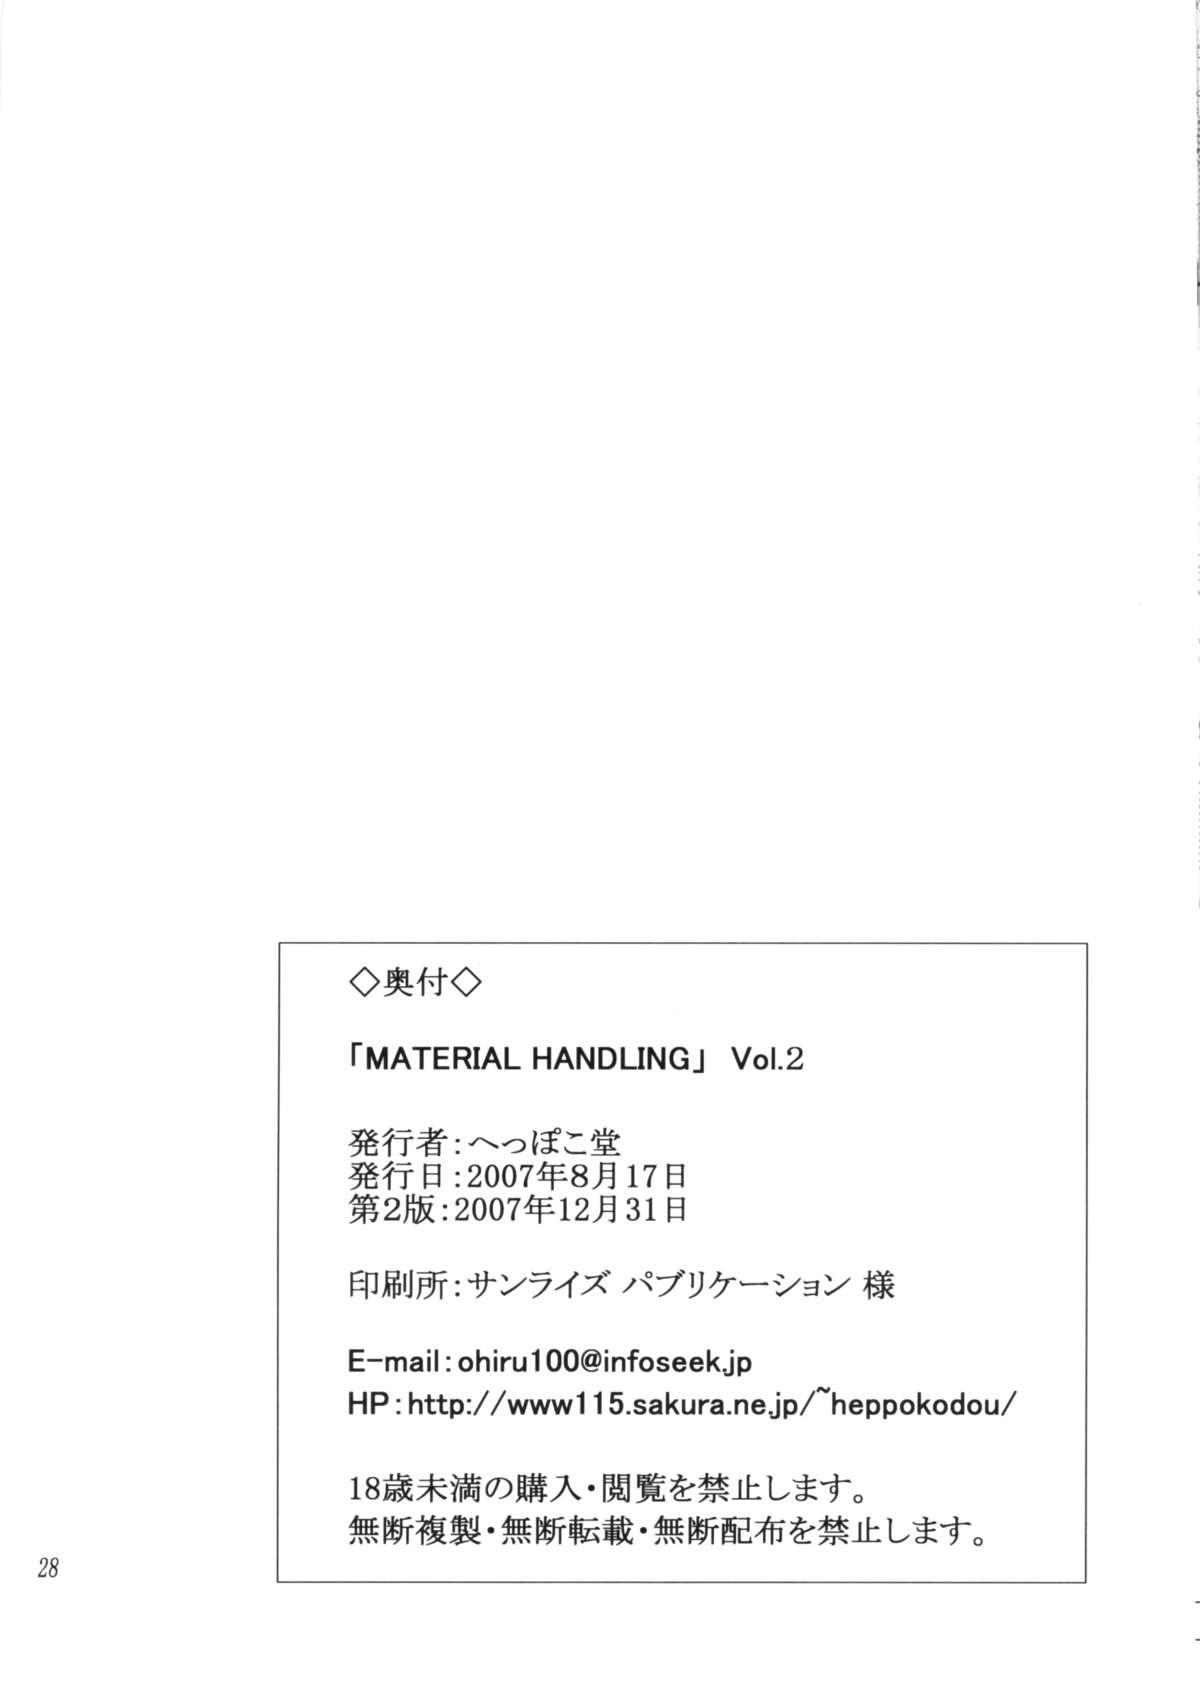 Material Handling Vol. 2 26